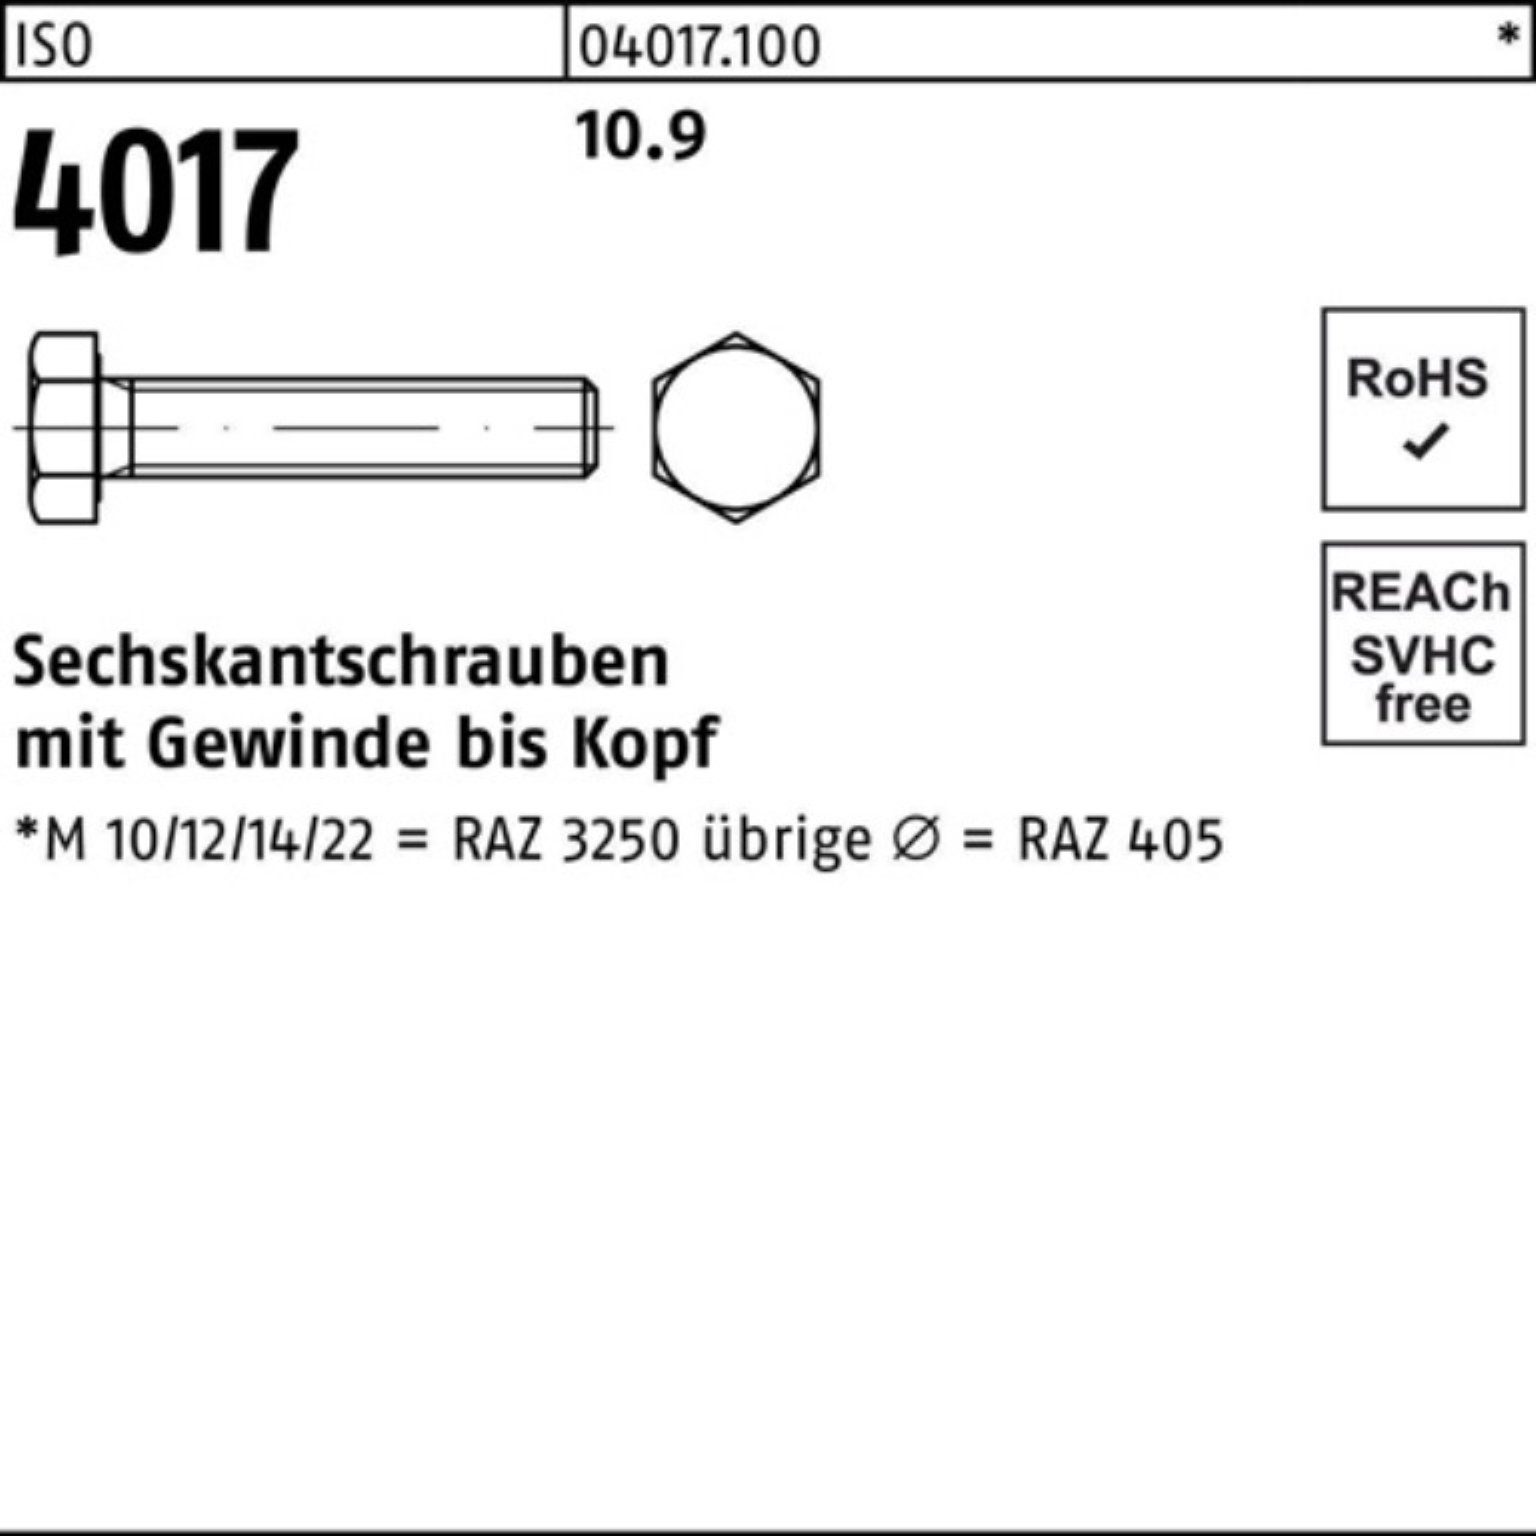 1 Bufab Pack 100er 4017 Sechskantschraube 10.9 VG 401 ISO ISO M36x Sechskantschraube 90 Stück